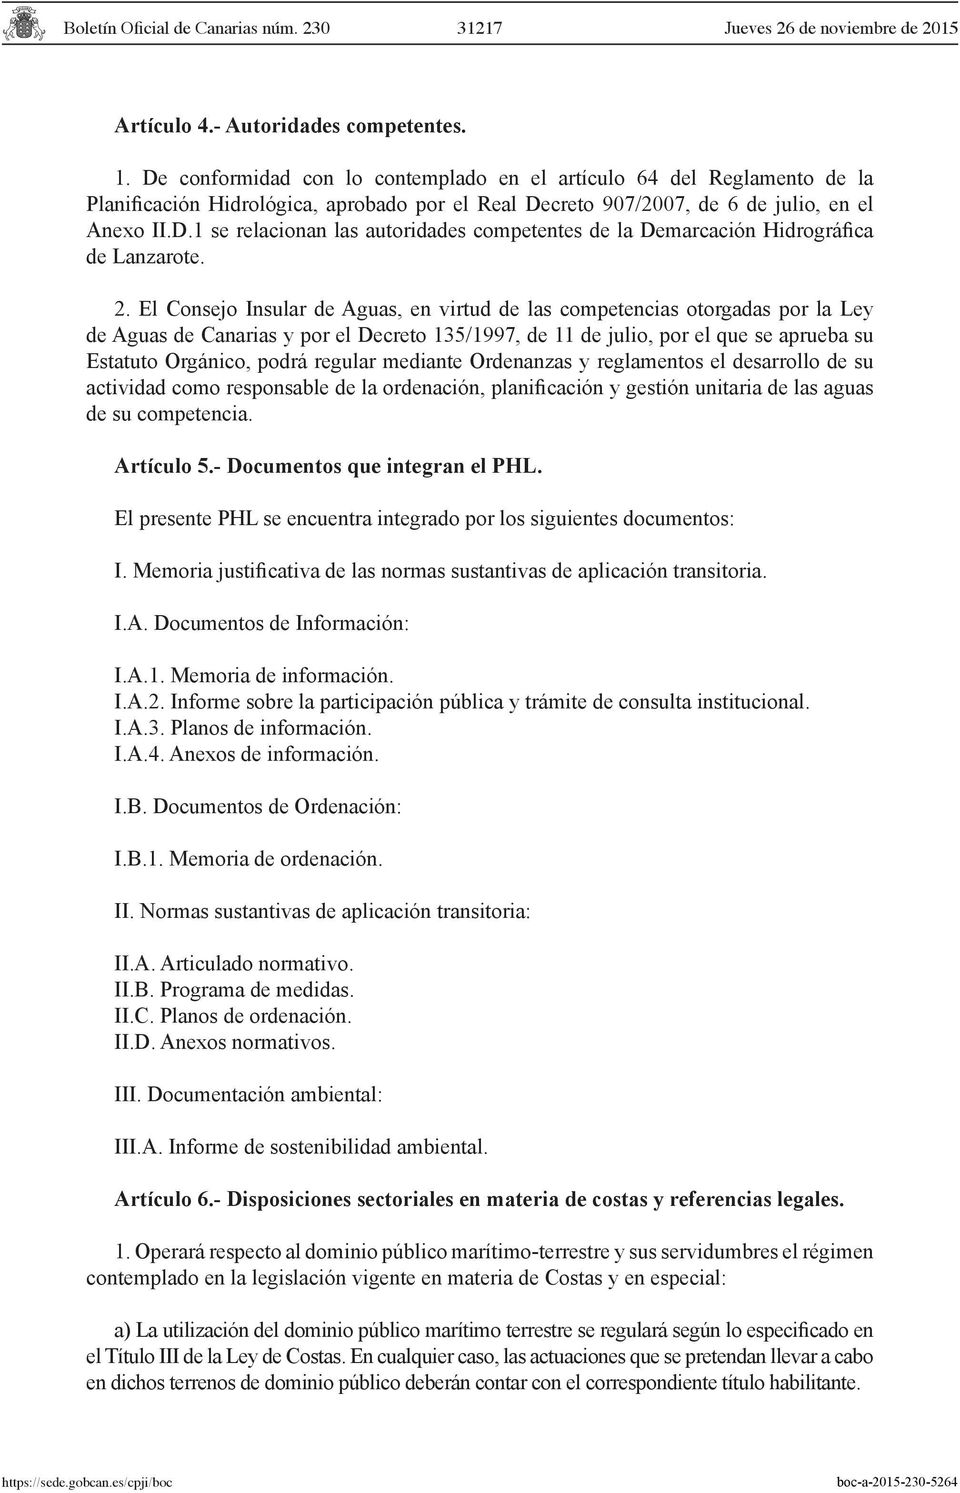 2. El Consejo Insular de Aguas, en virtud de las competencias otorgadas por la Ley de Aguas de Canarias y por el Decreto 135/1997, de 11 de julio, por el que se aprueba su Estatuto Orgánico, podrá